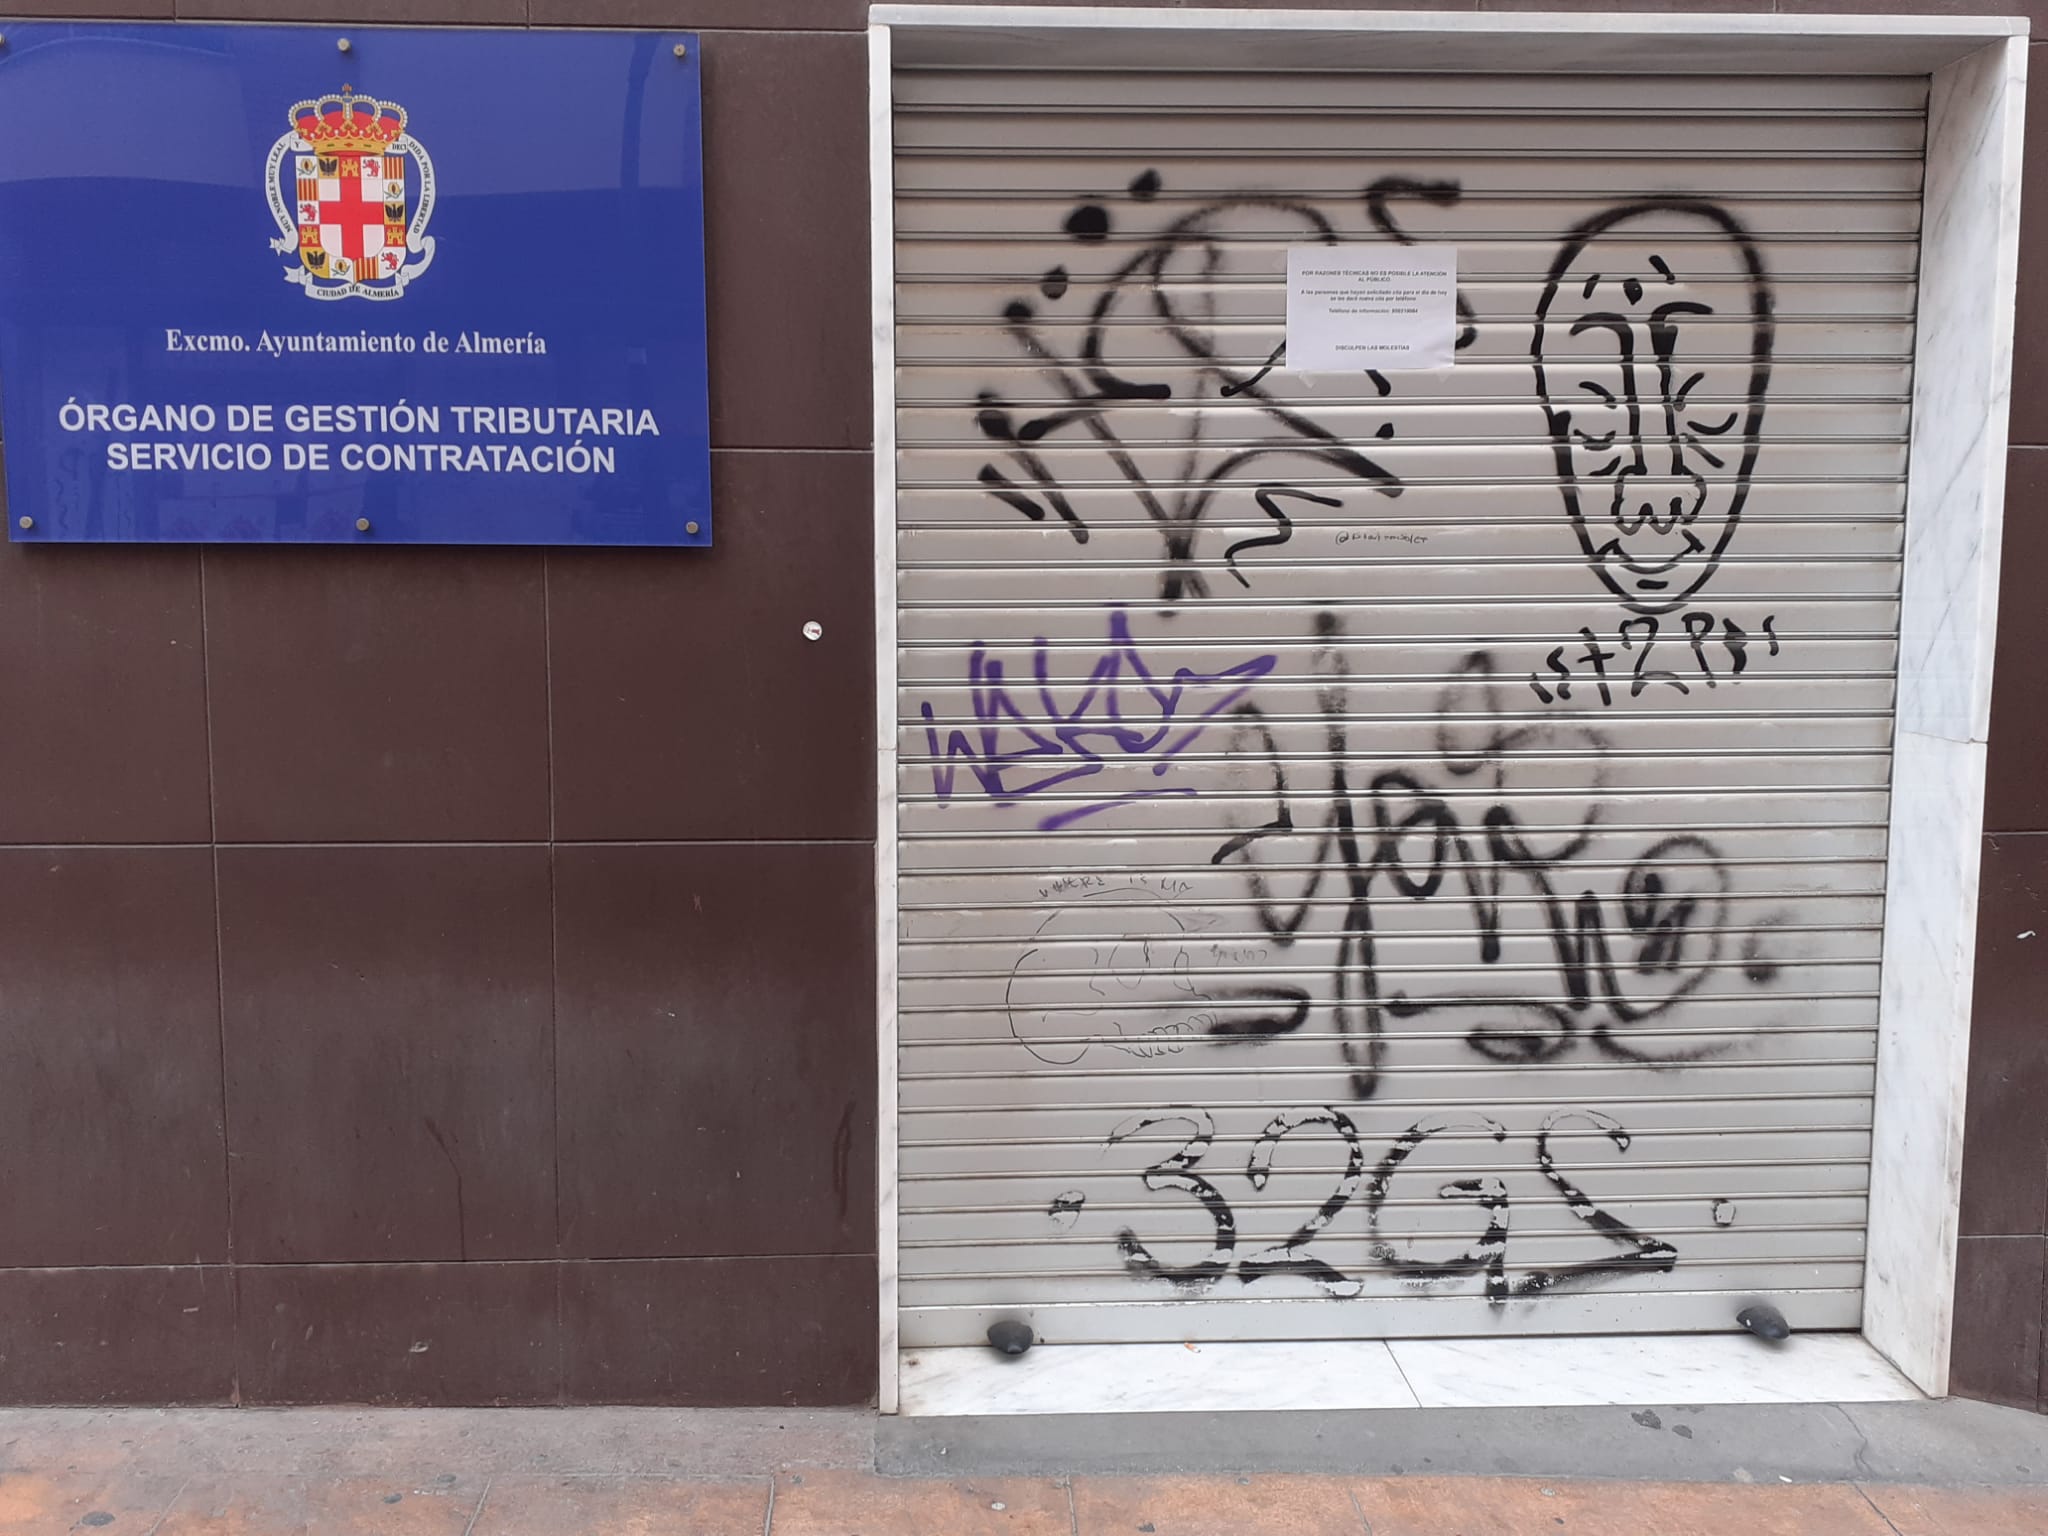 Oficina cerrada en Almería